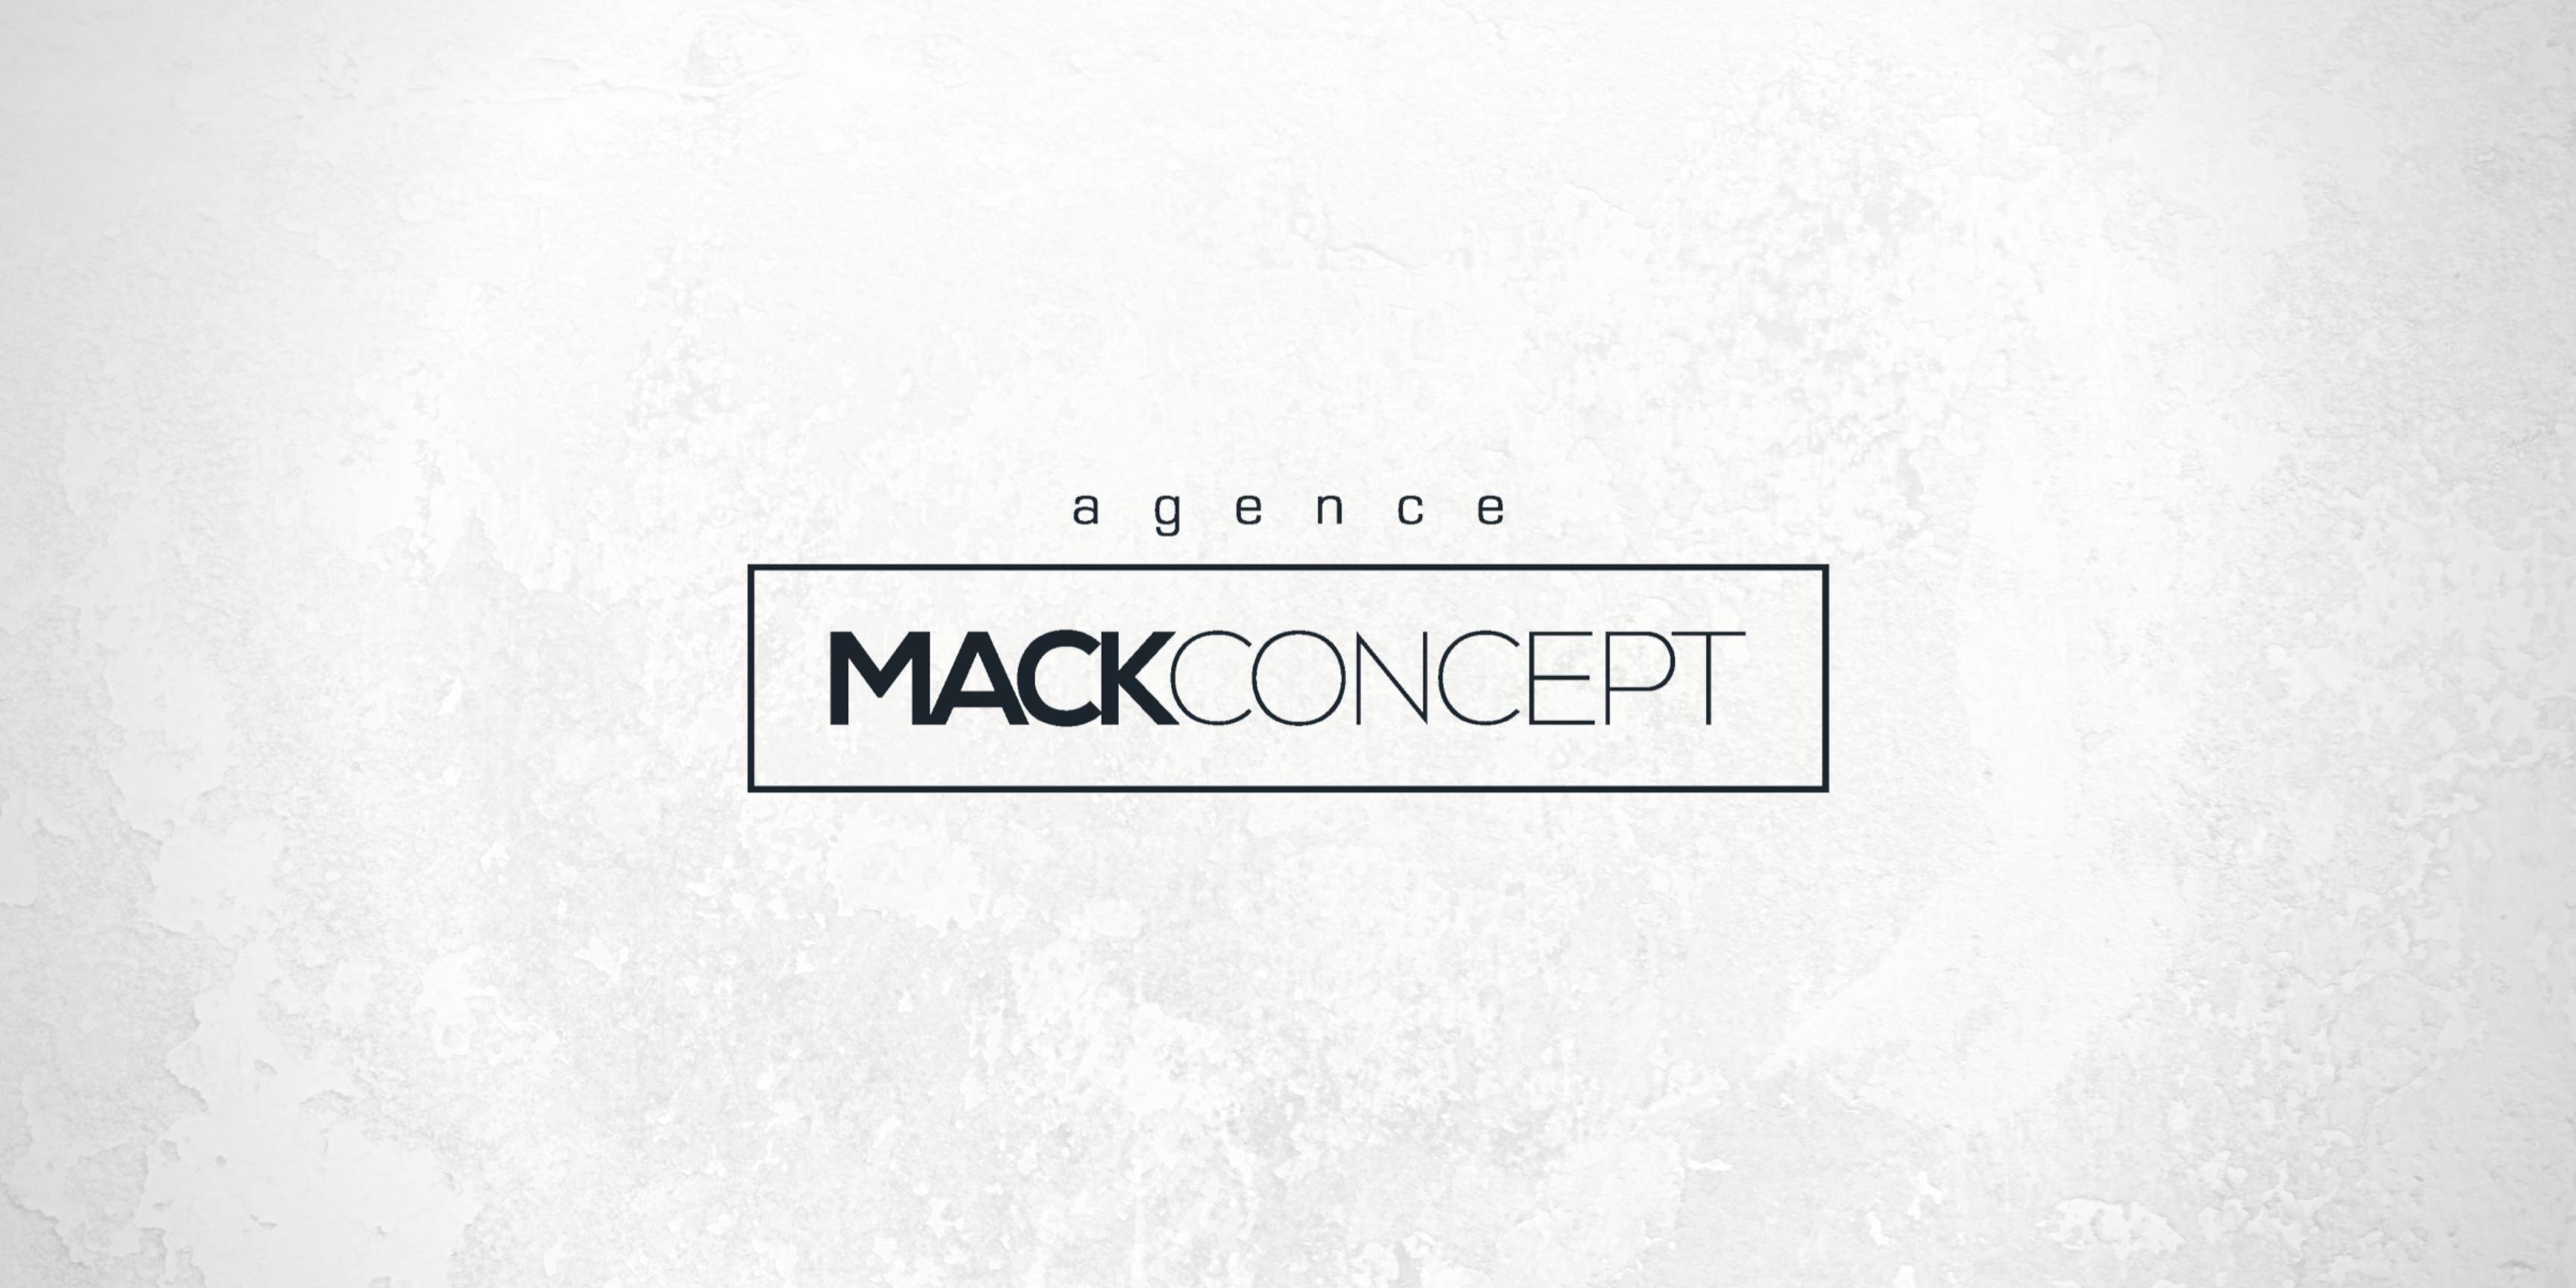 Notre partenaire l'Agence Mackconcept recrute !